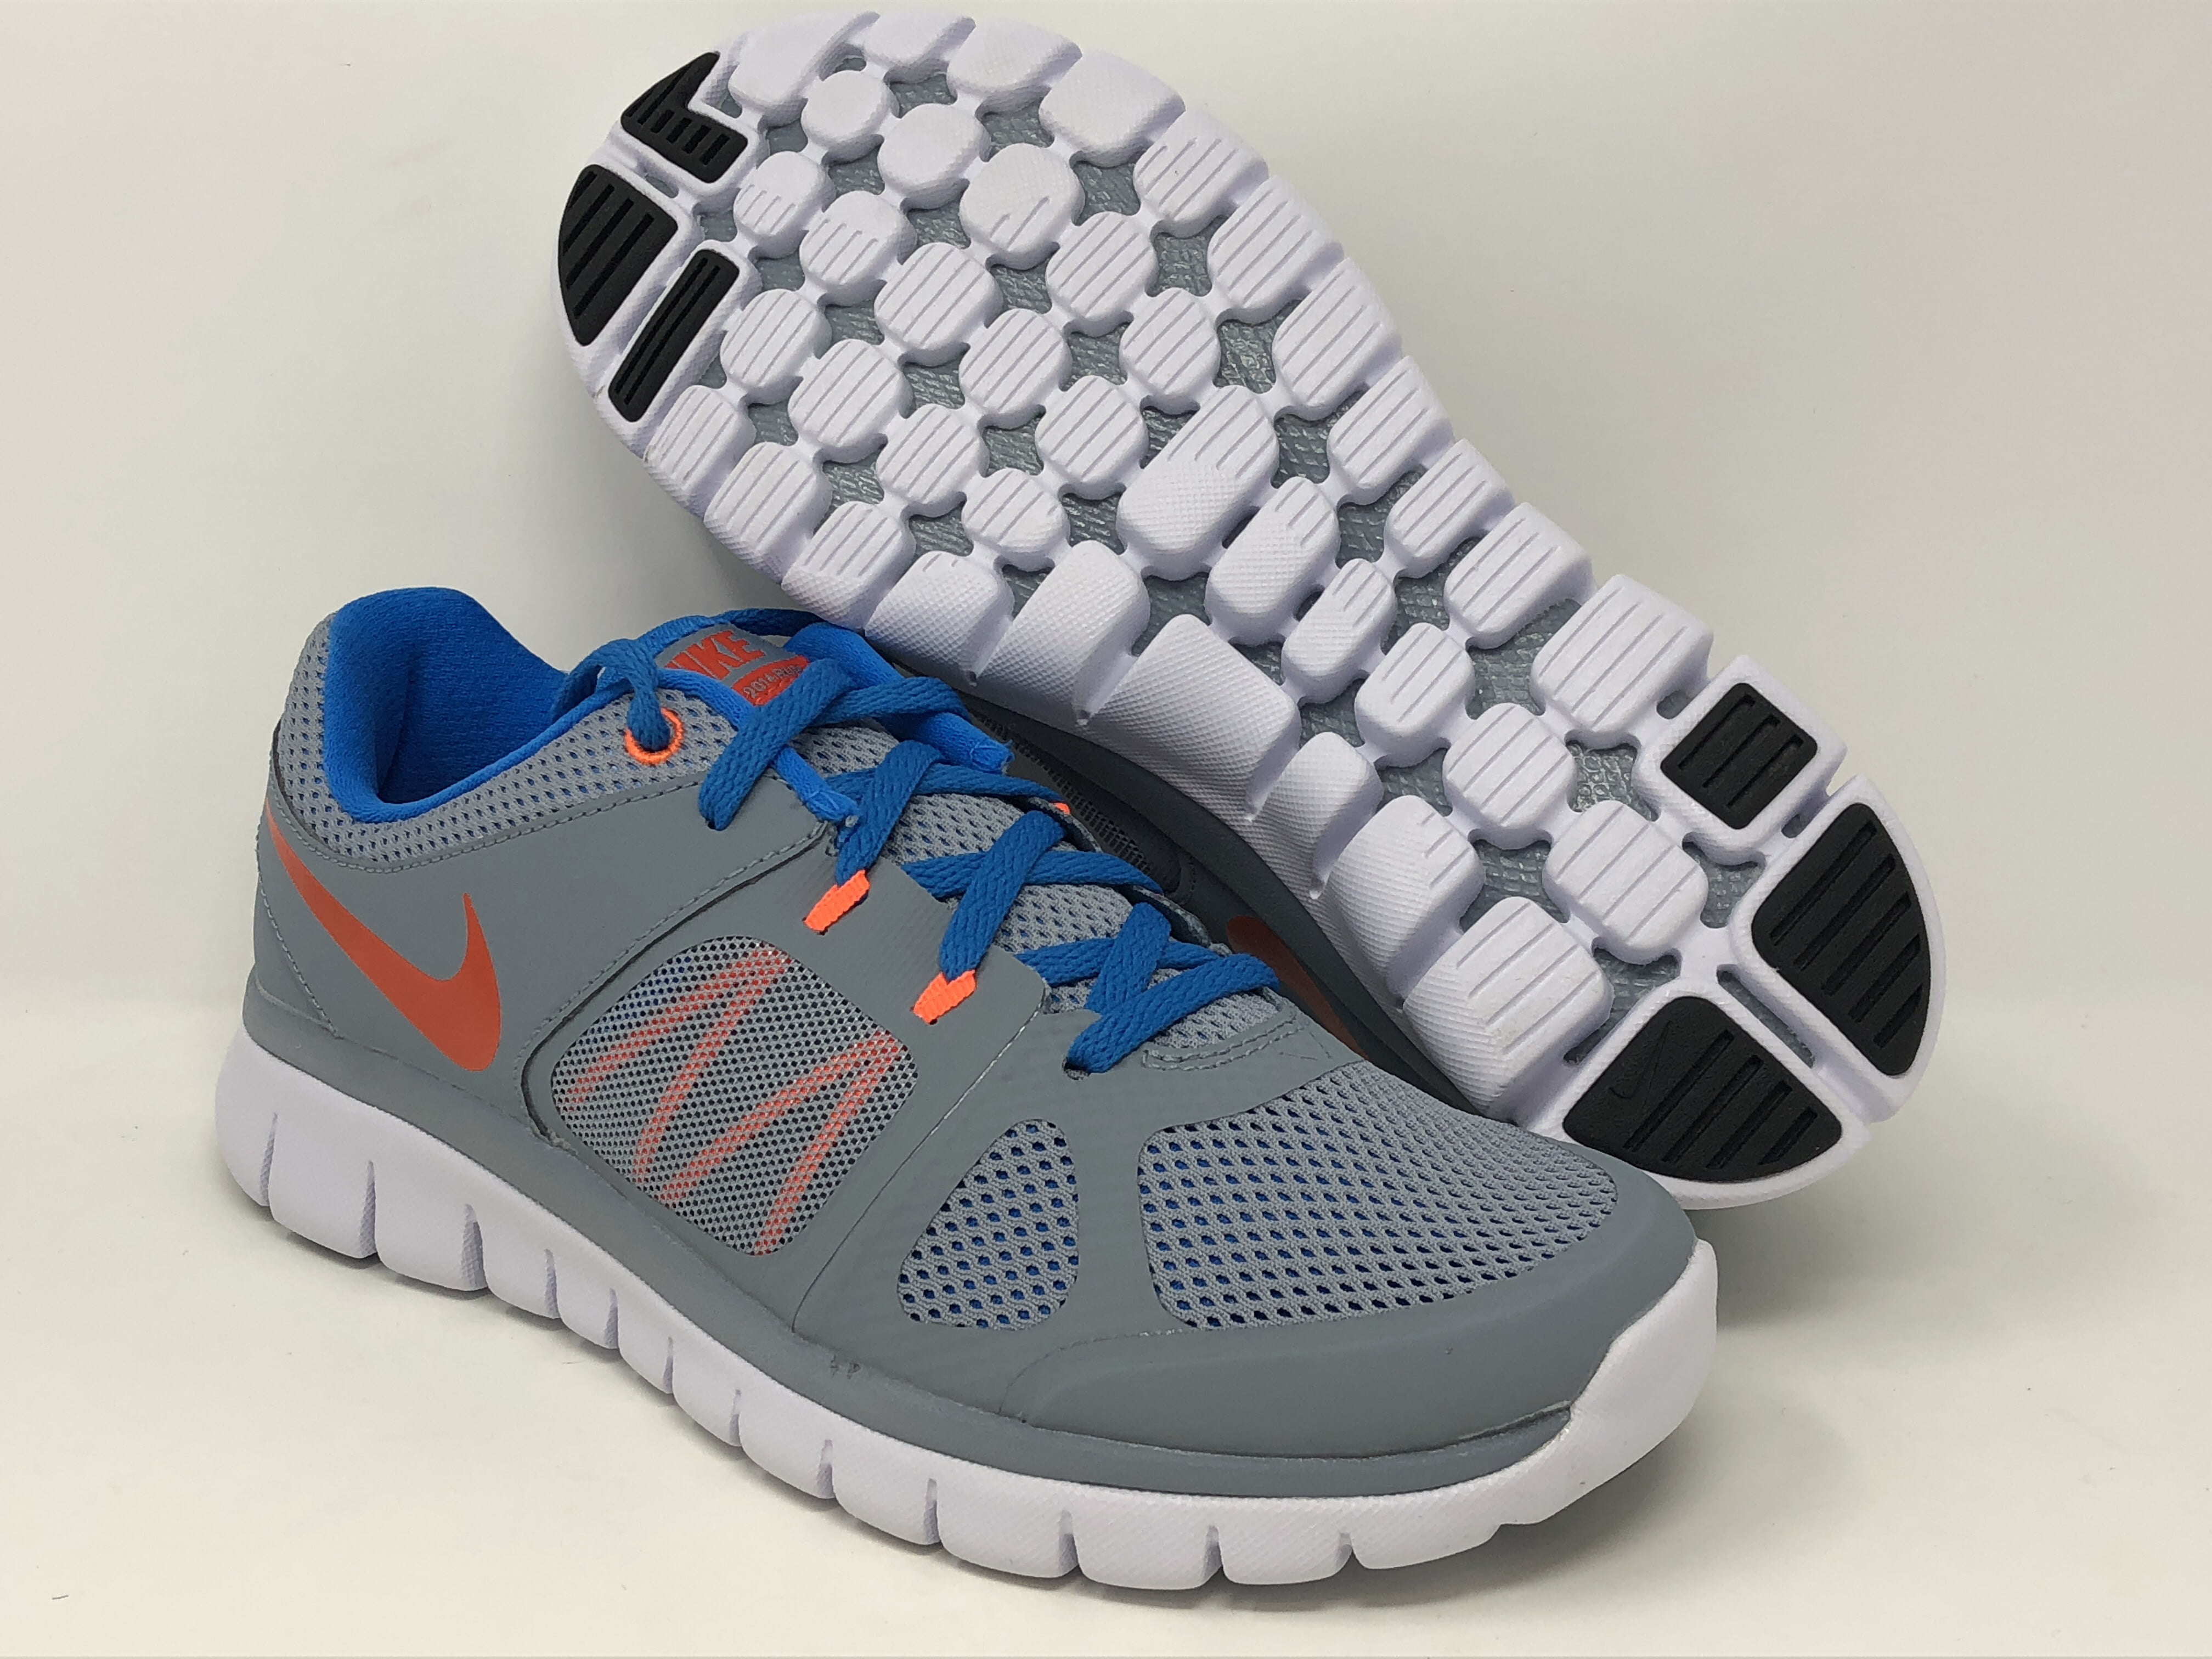 methaan In tegenspraak Ouderling Nike Boy's Flex 2014 RN Running Shoe, Grey/Orange/Black, 6Y US - Walmart.com